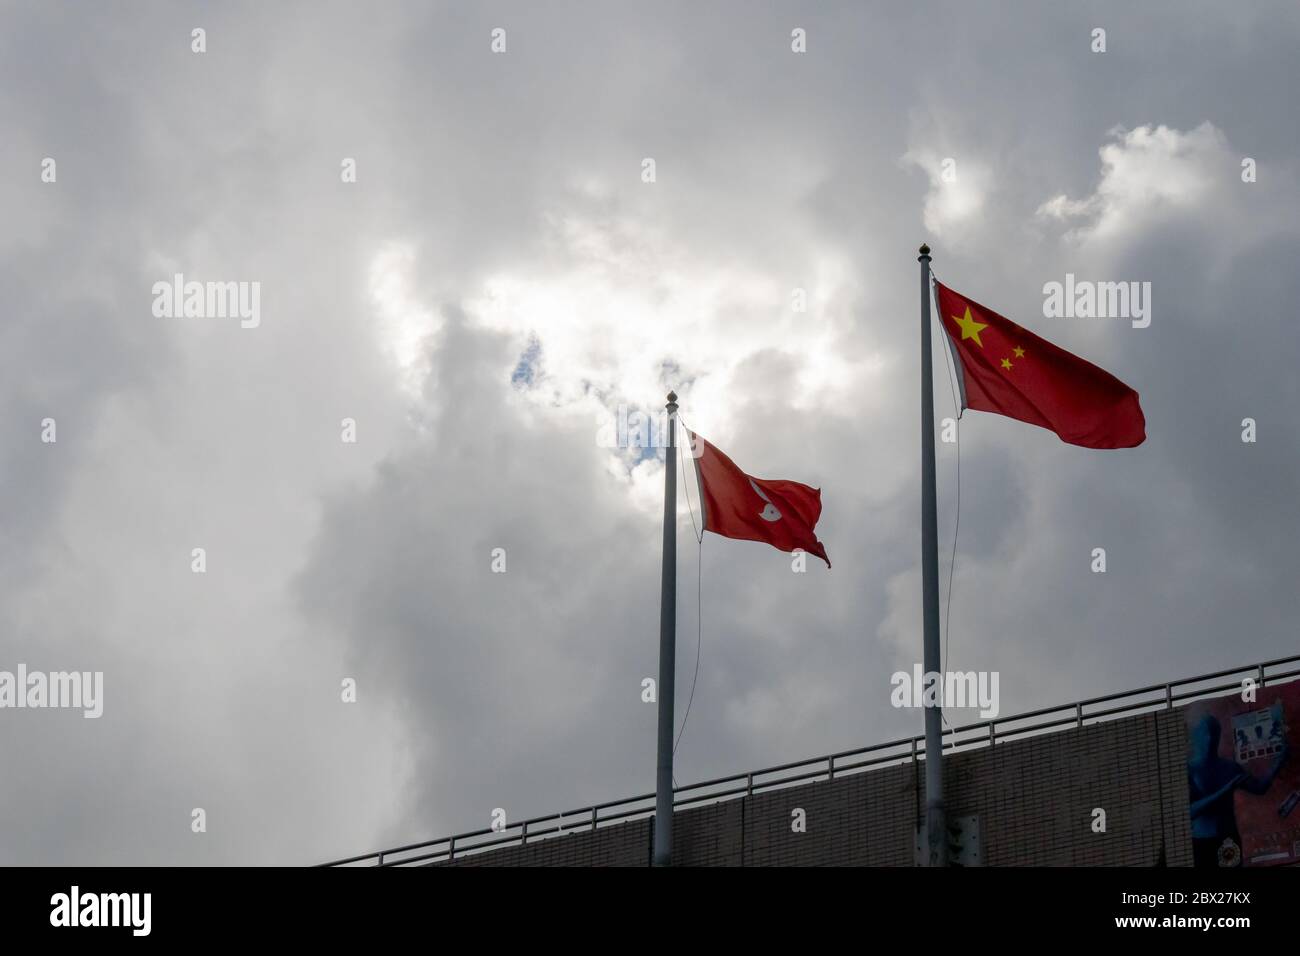 Causeway Bay, Hong Kong. 04, juin 2020. Les drapeaux chinois et de Hong Kong se sont rassemblés le 4 juin alors que le législateur adopte la loi incriminant la diffamation de l'hymne national chinois. © Danny Tsai / Alamy Live News Banque D'Images